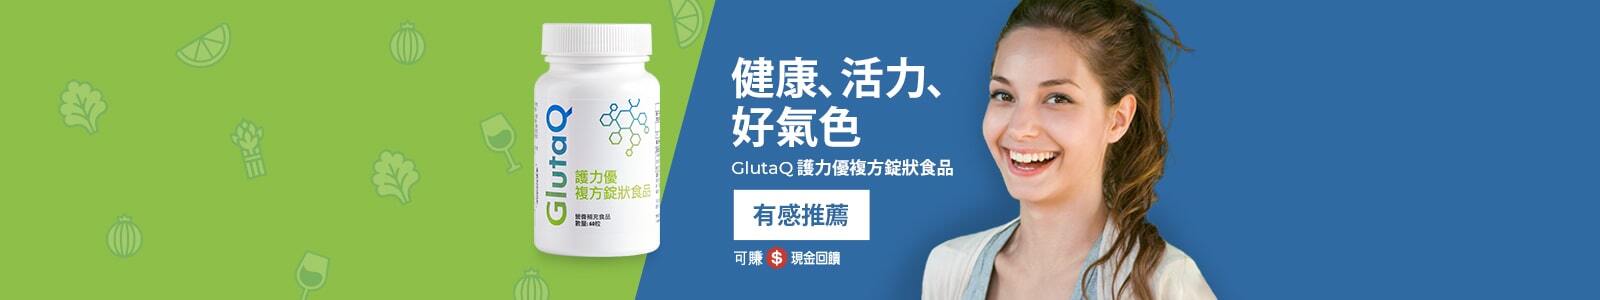 GlutaQ 護力優複方錠狀食品 健康、活力、好氣色 有感推薦